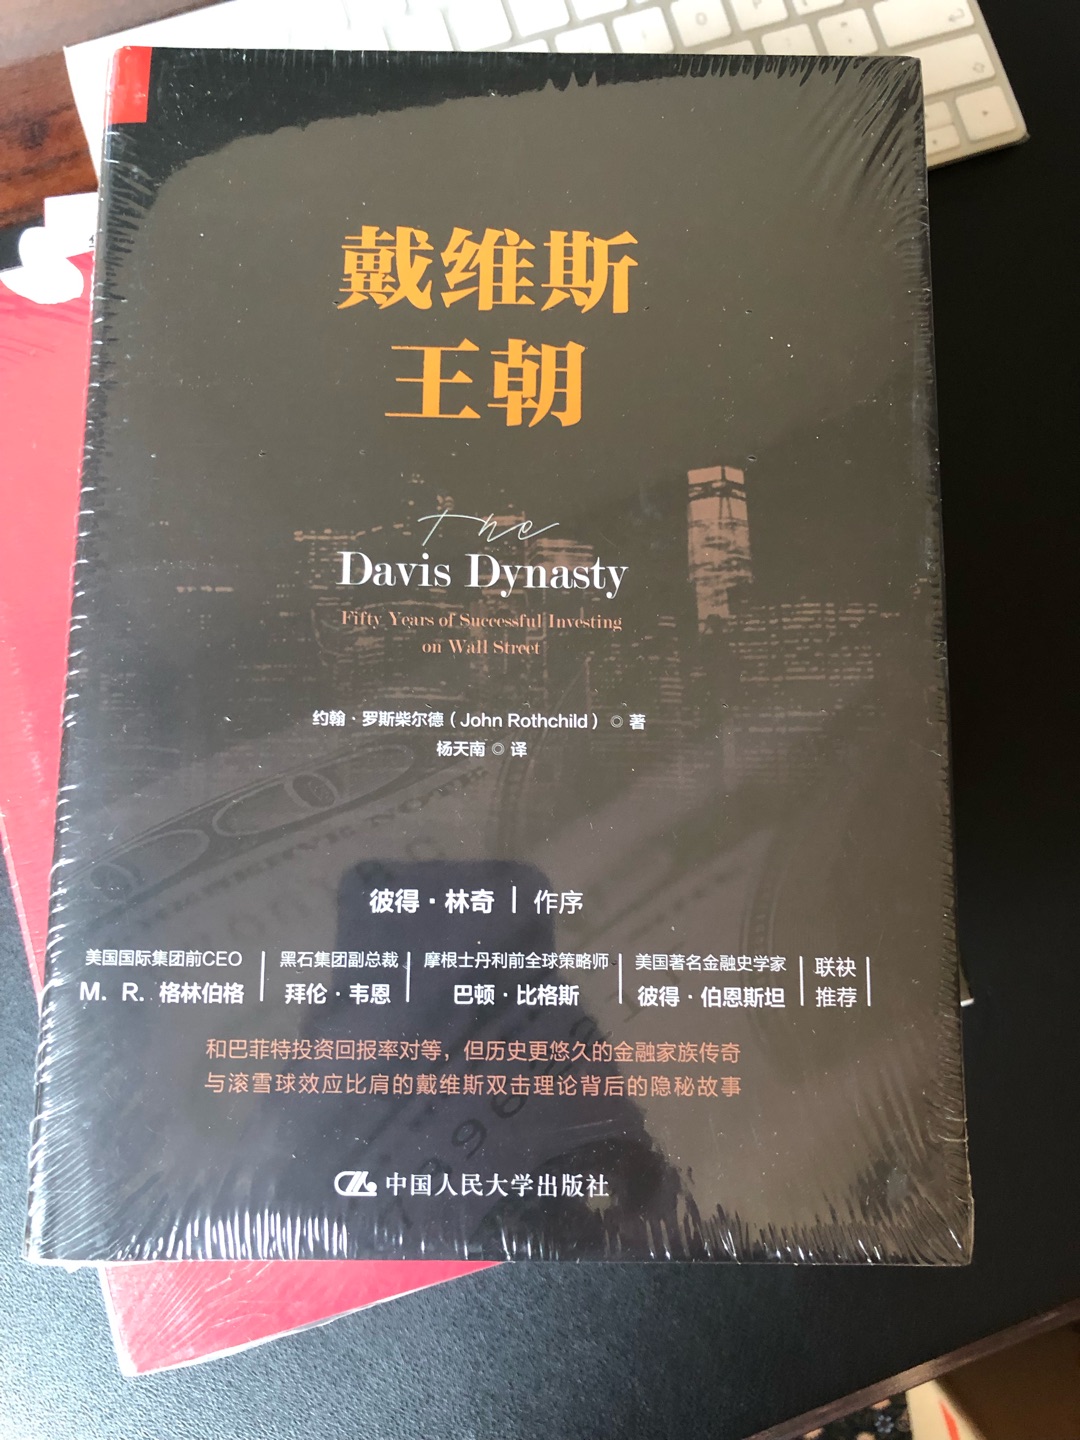 杨天南老师翻译的星座戴维斯王朝是经典的图书，早就想拜读经典，这是世界读书日活动真的给力，终于买到了第一时间